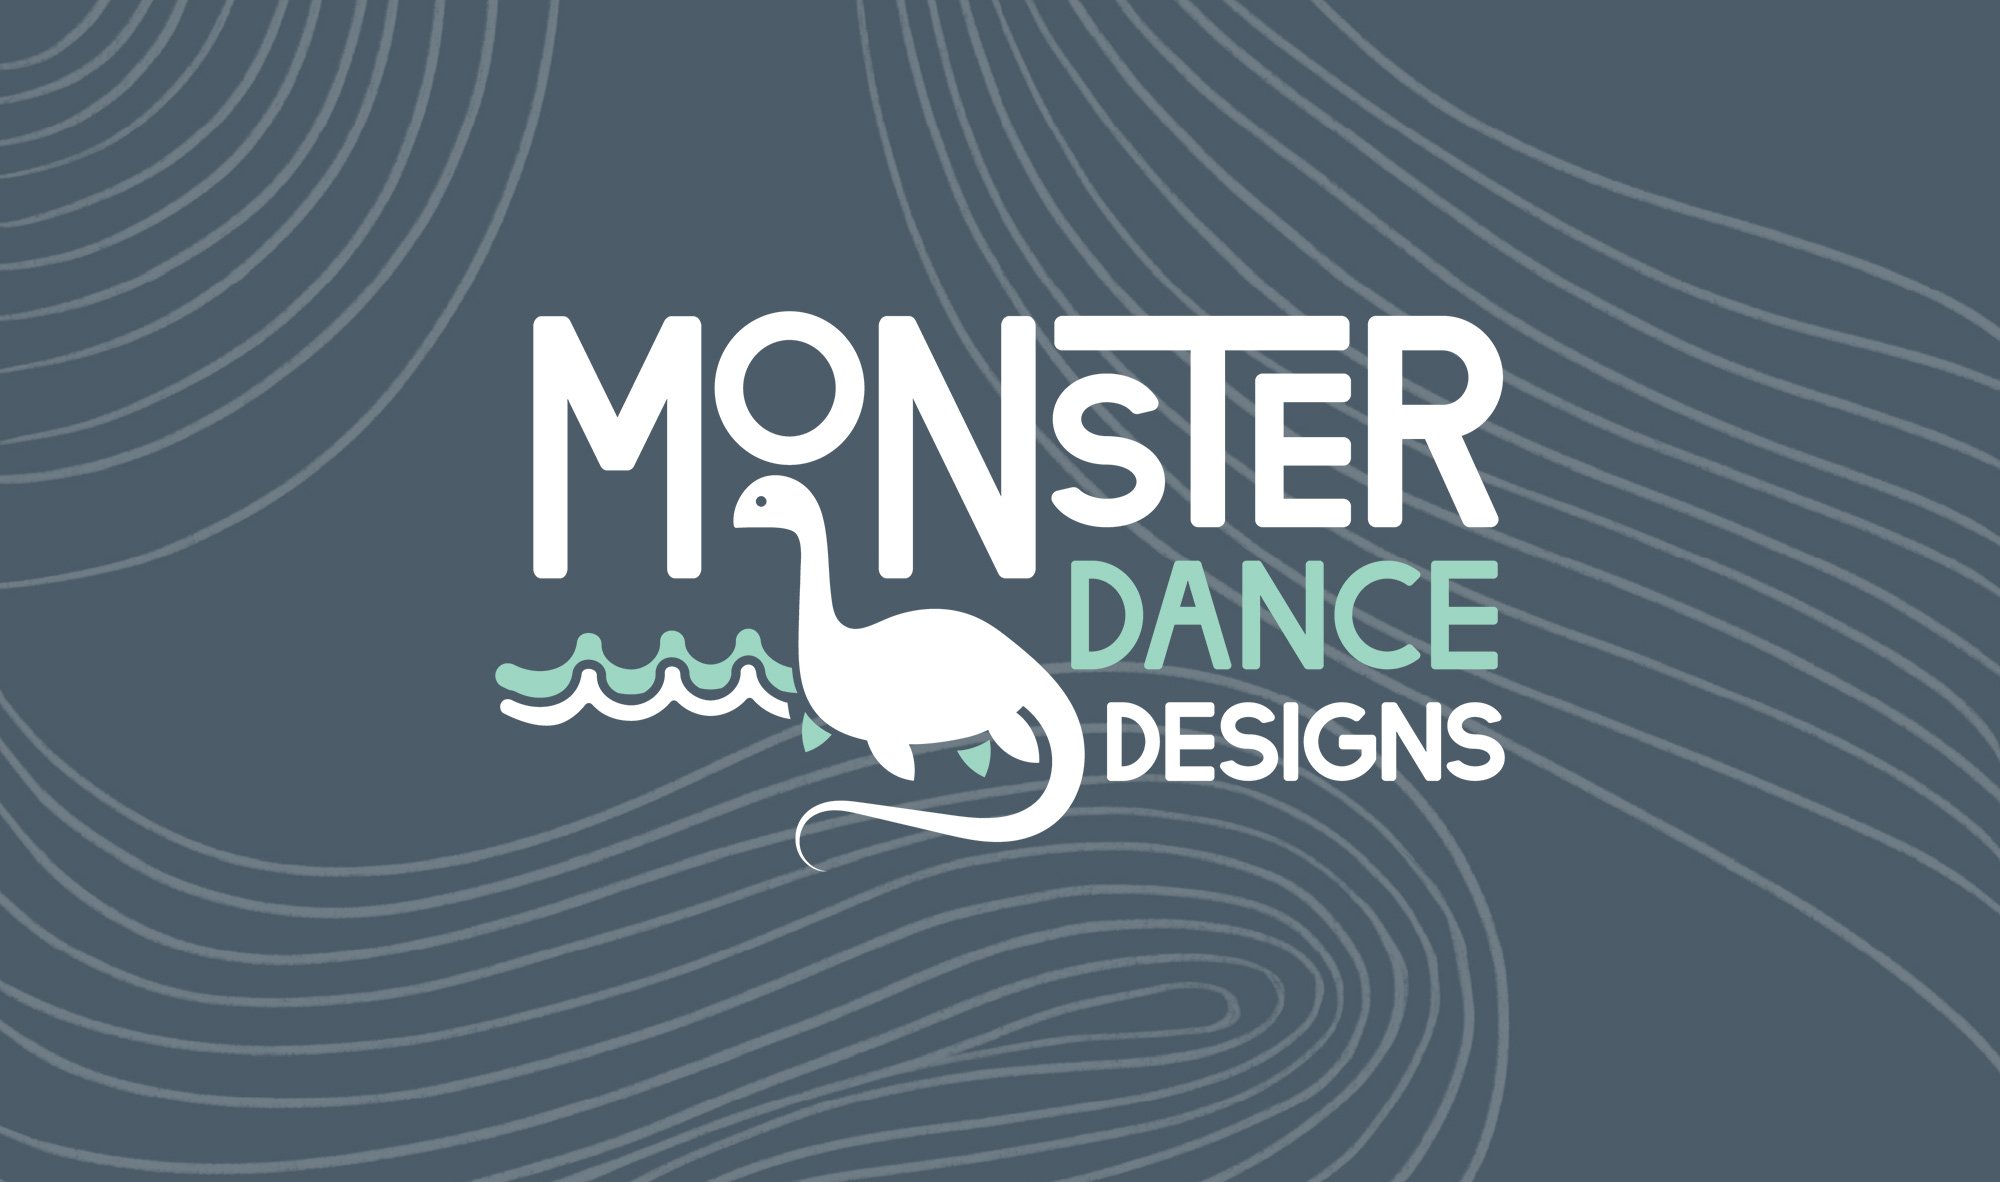 Logo Design, Brand Design, &amp; E-Commerce Website Design for Product Artist | Six Leaf Design